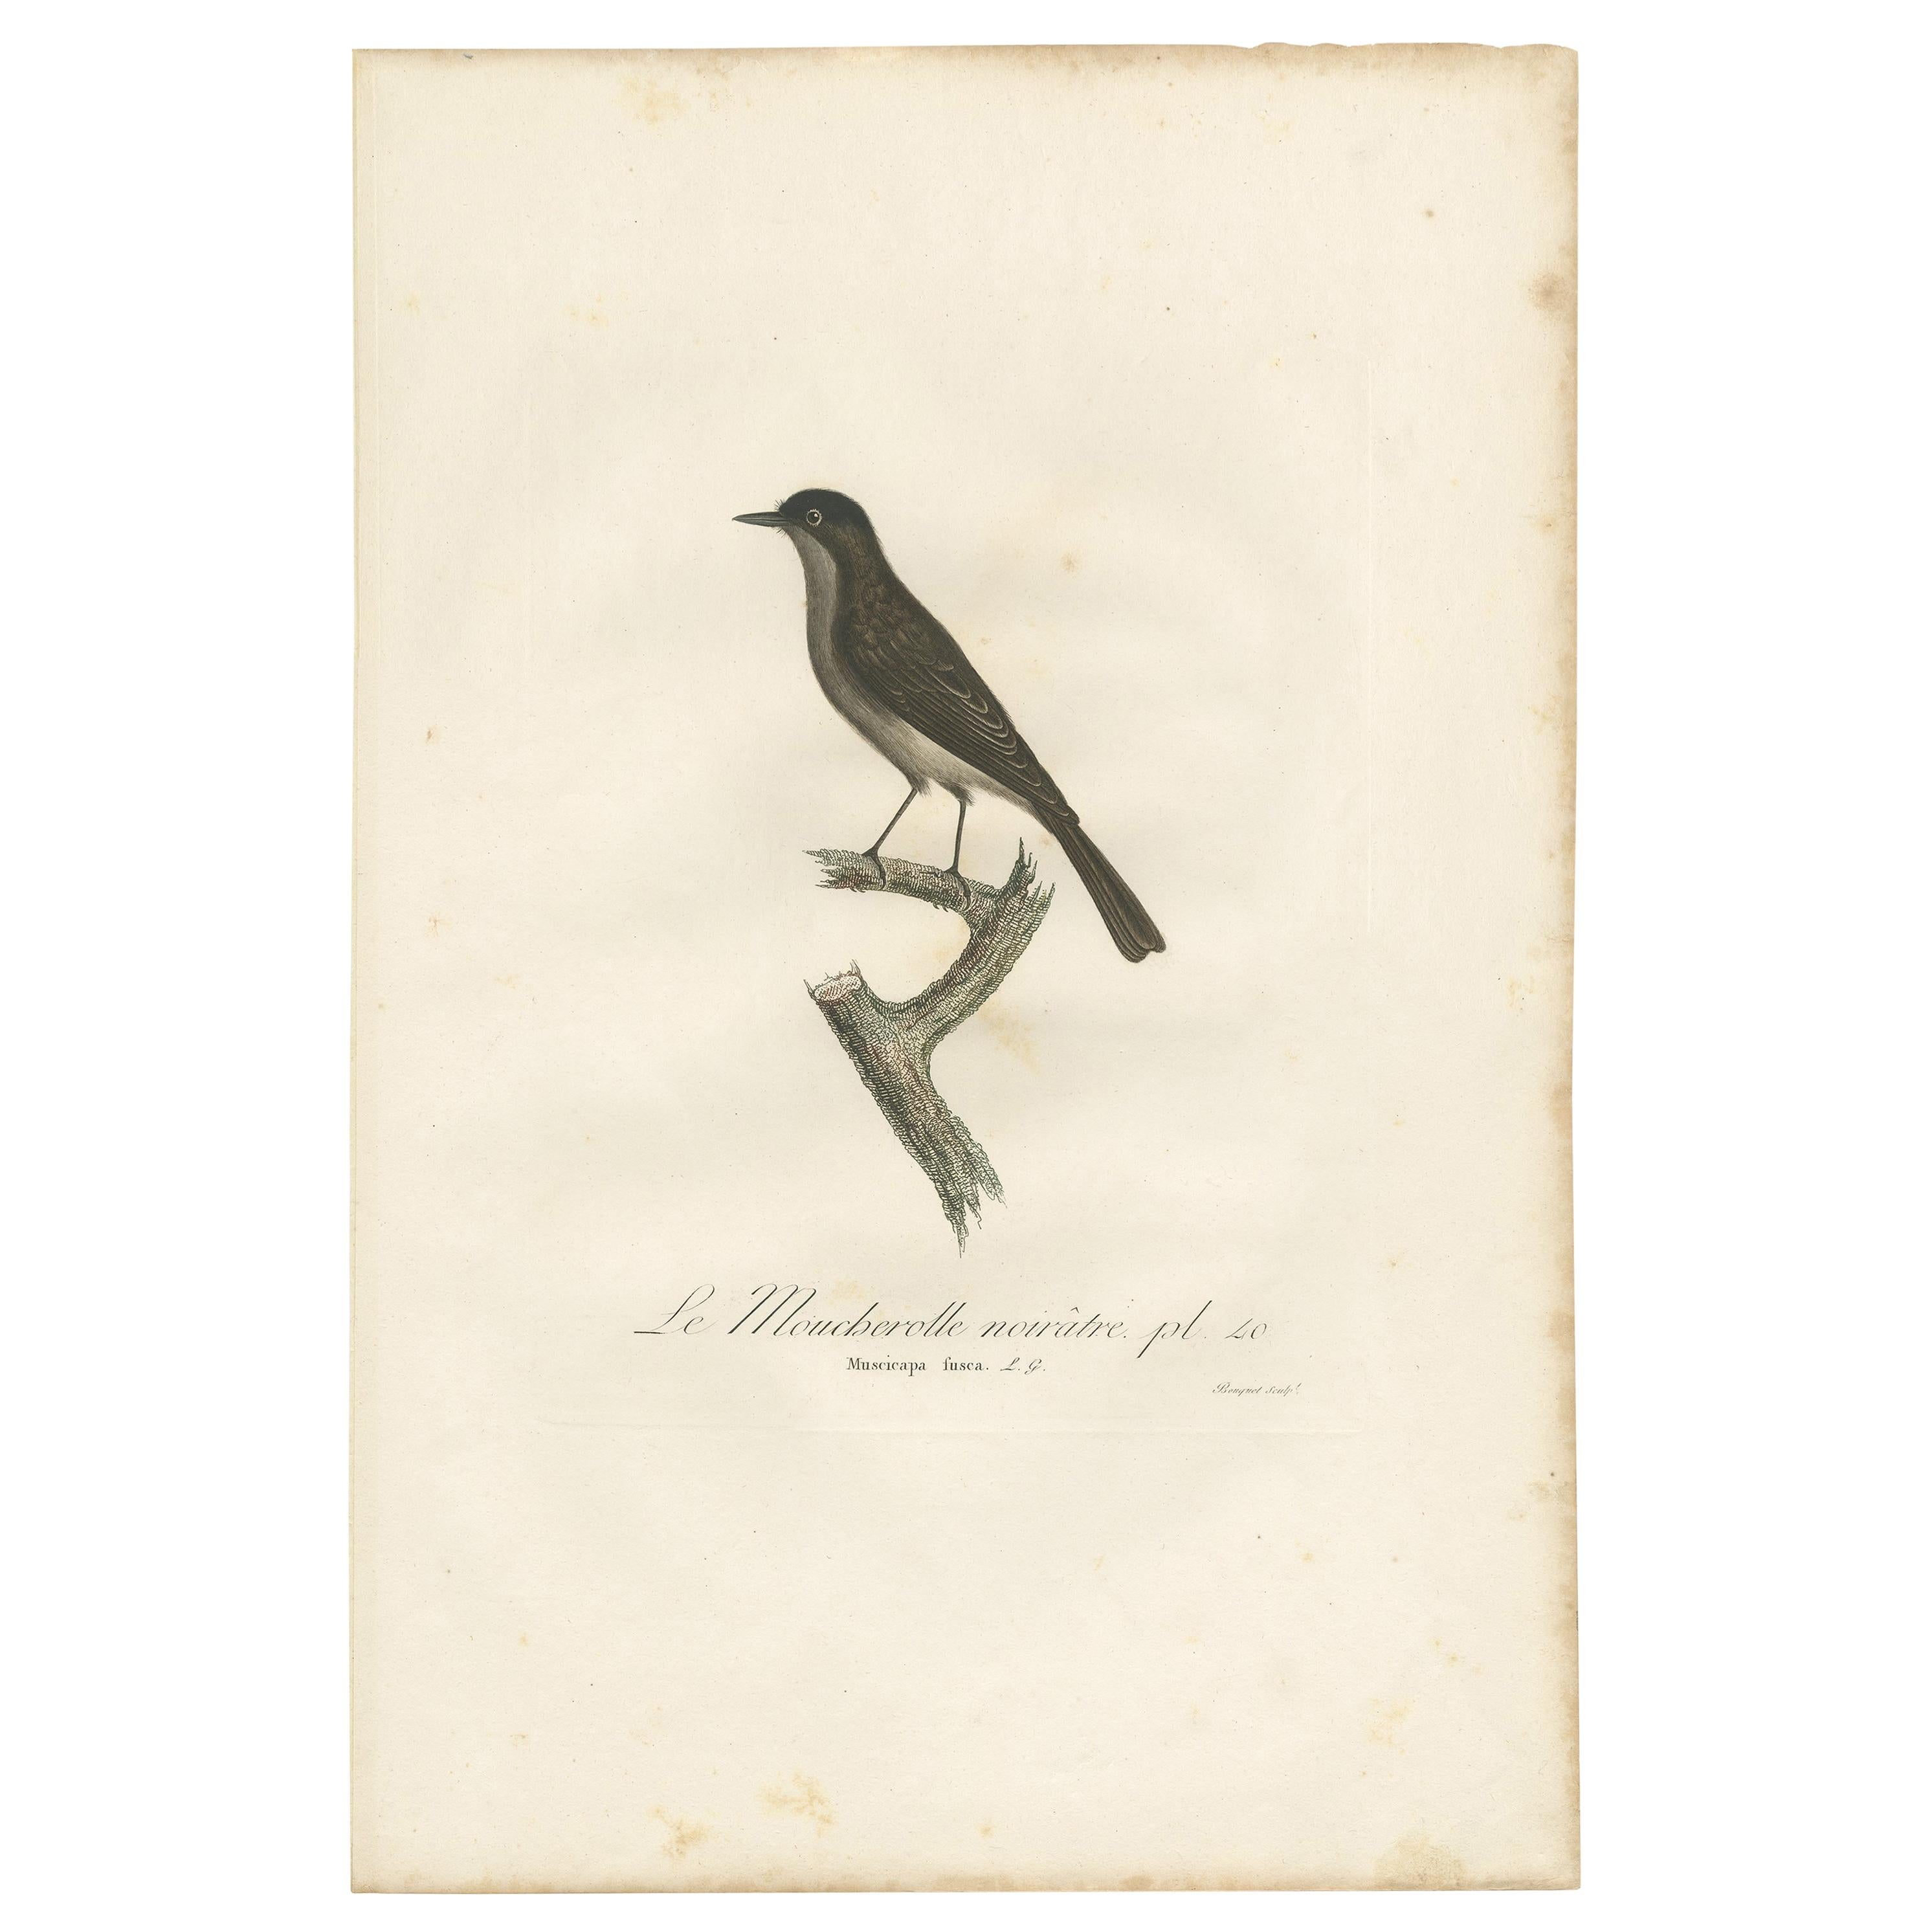 Antique bird print titled 'Le Moucherolle noirâtre'. Original antique print of a pewee flycatcher. This print originates from 'Histoire naturelle des oiseaux de l'Amérique septentrionale' by L. J. P. Vieillot. Published, 1807-1808. Engraved by